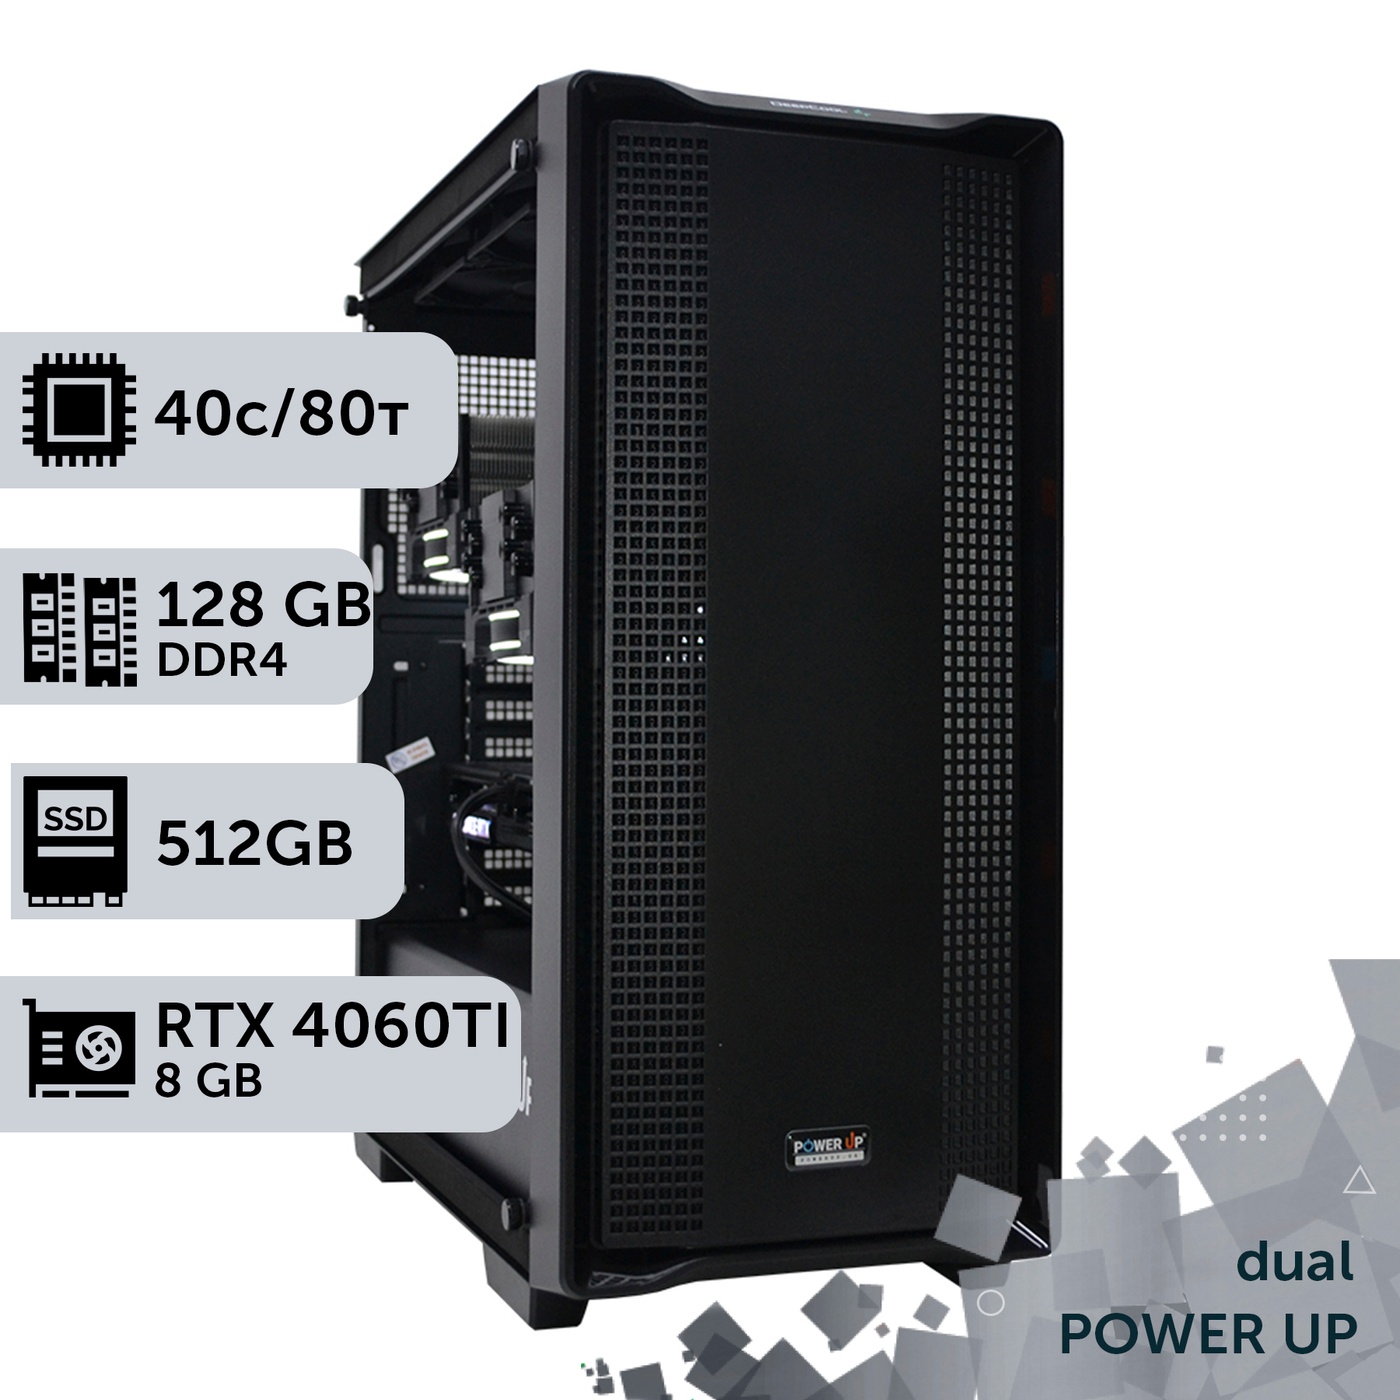 Двухпроцессорная рабочая станция PowerUp #415 Xeon E5 2673 v4 x2/128 GB/HDD 1 TB/SSD 512GB/GeForce RTX 4060Ti 8GB